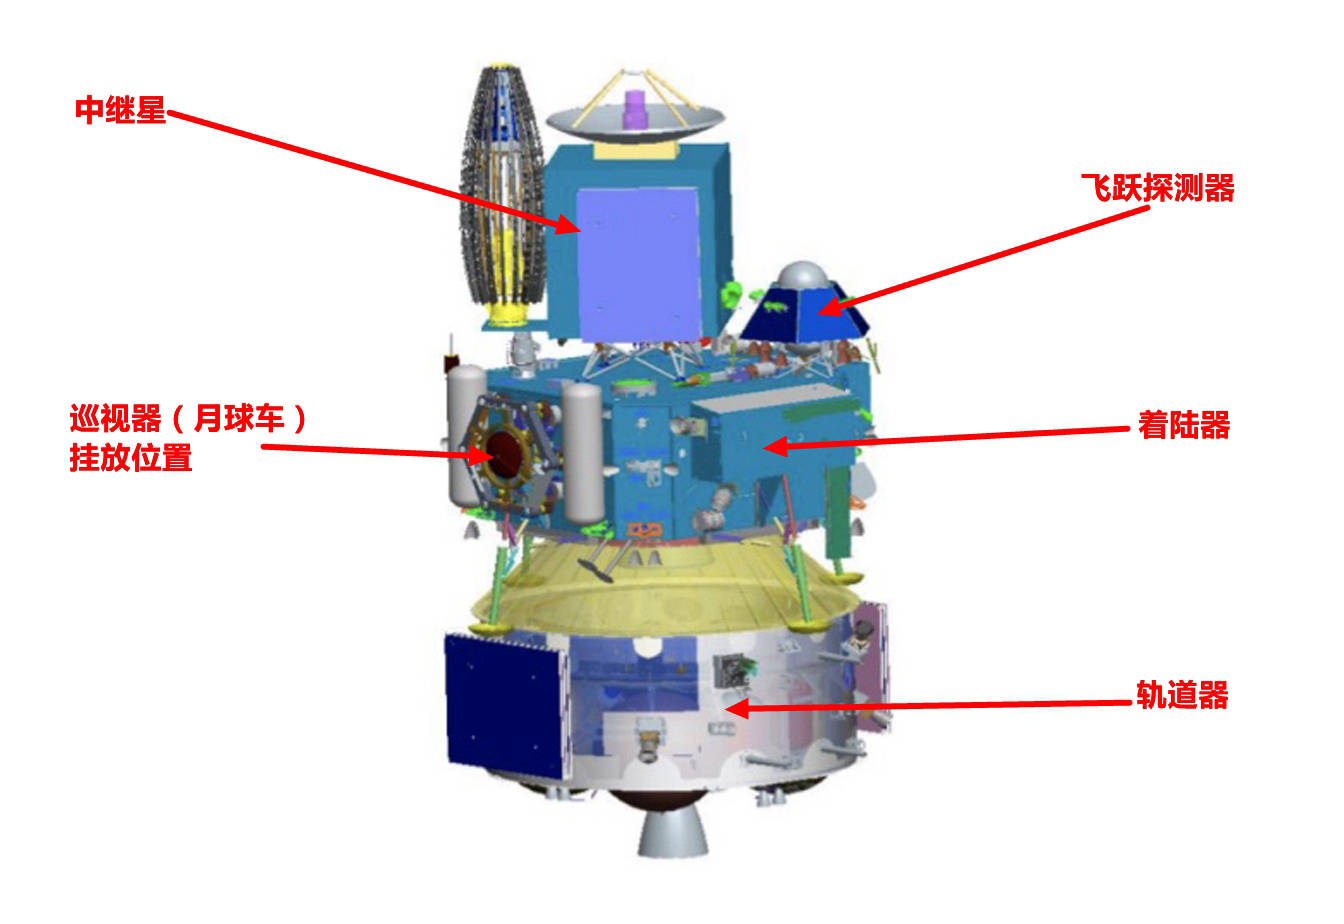 嫦娥四号中继星、高分六号卫星亮相2020年中国航天成就展